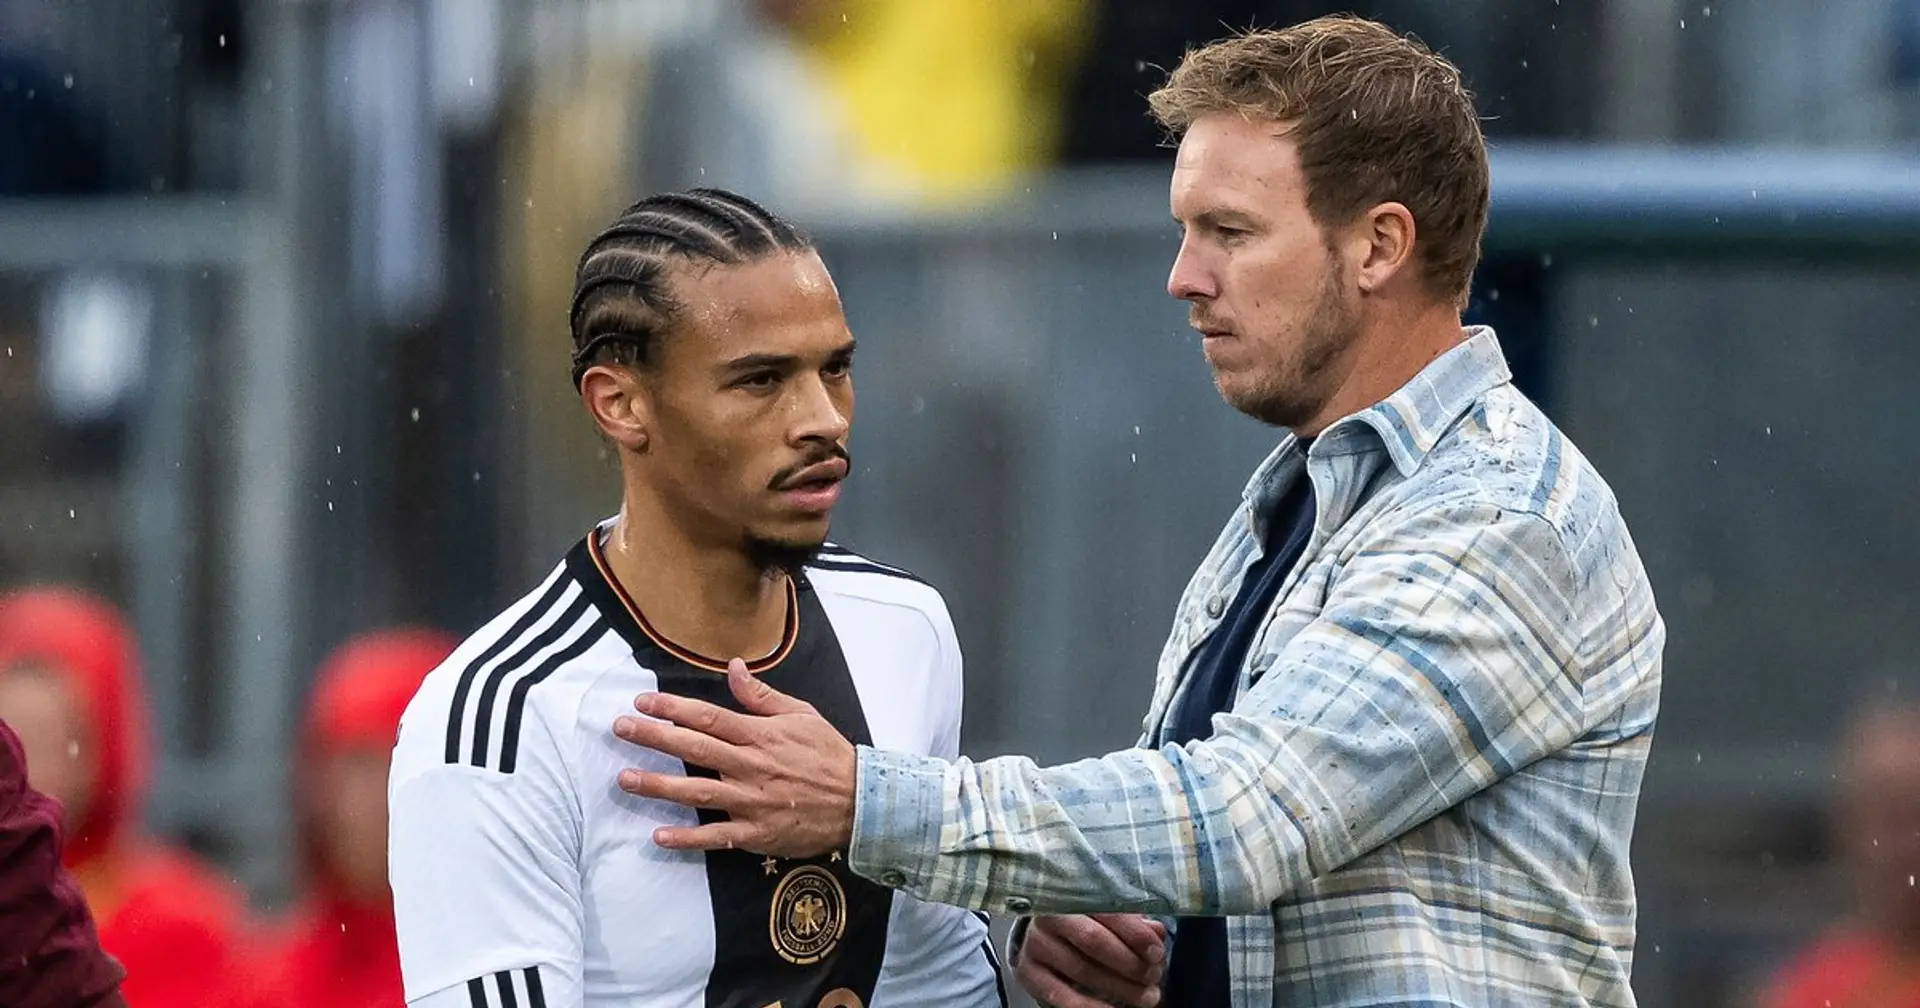 Trotz Verletzung: Leroy Sane wird wohl von Nagelsmann für den EM-Kader des DFB nominiert